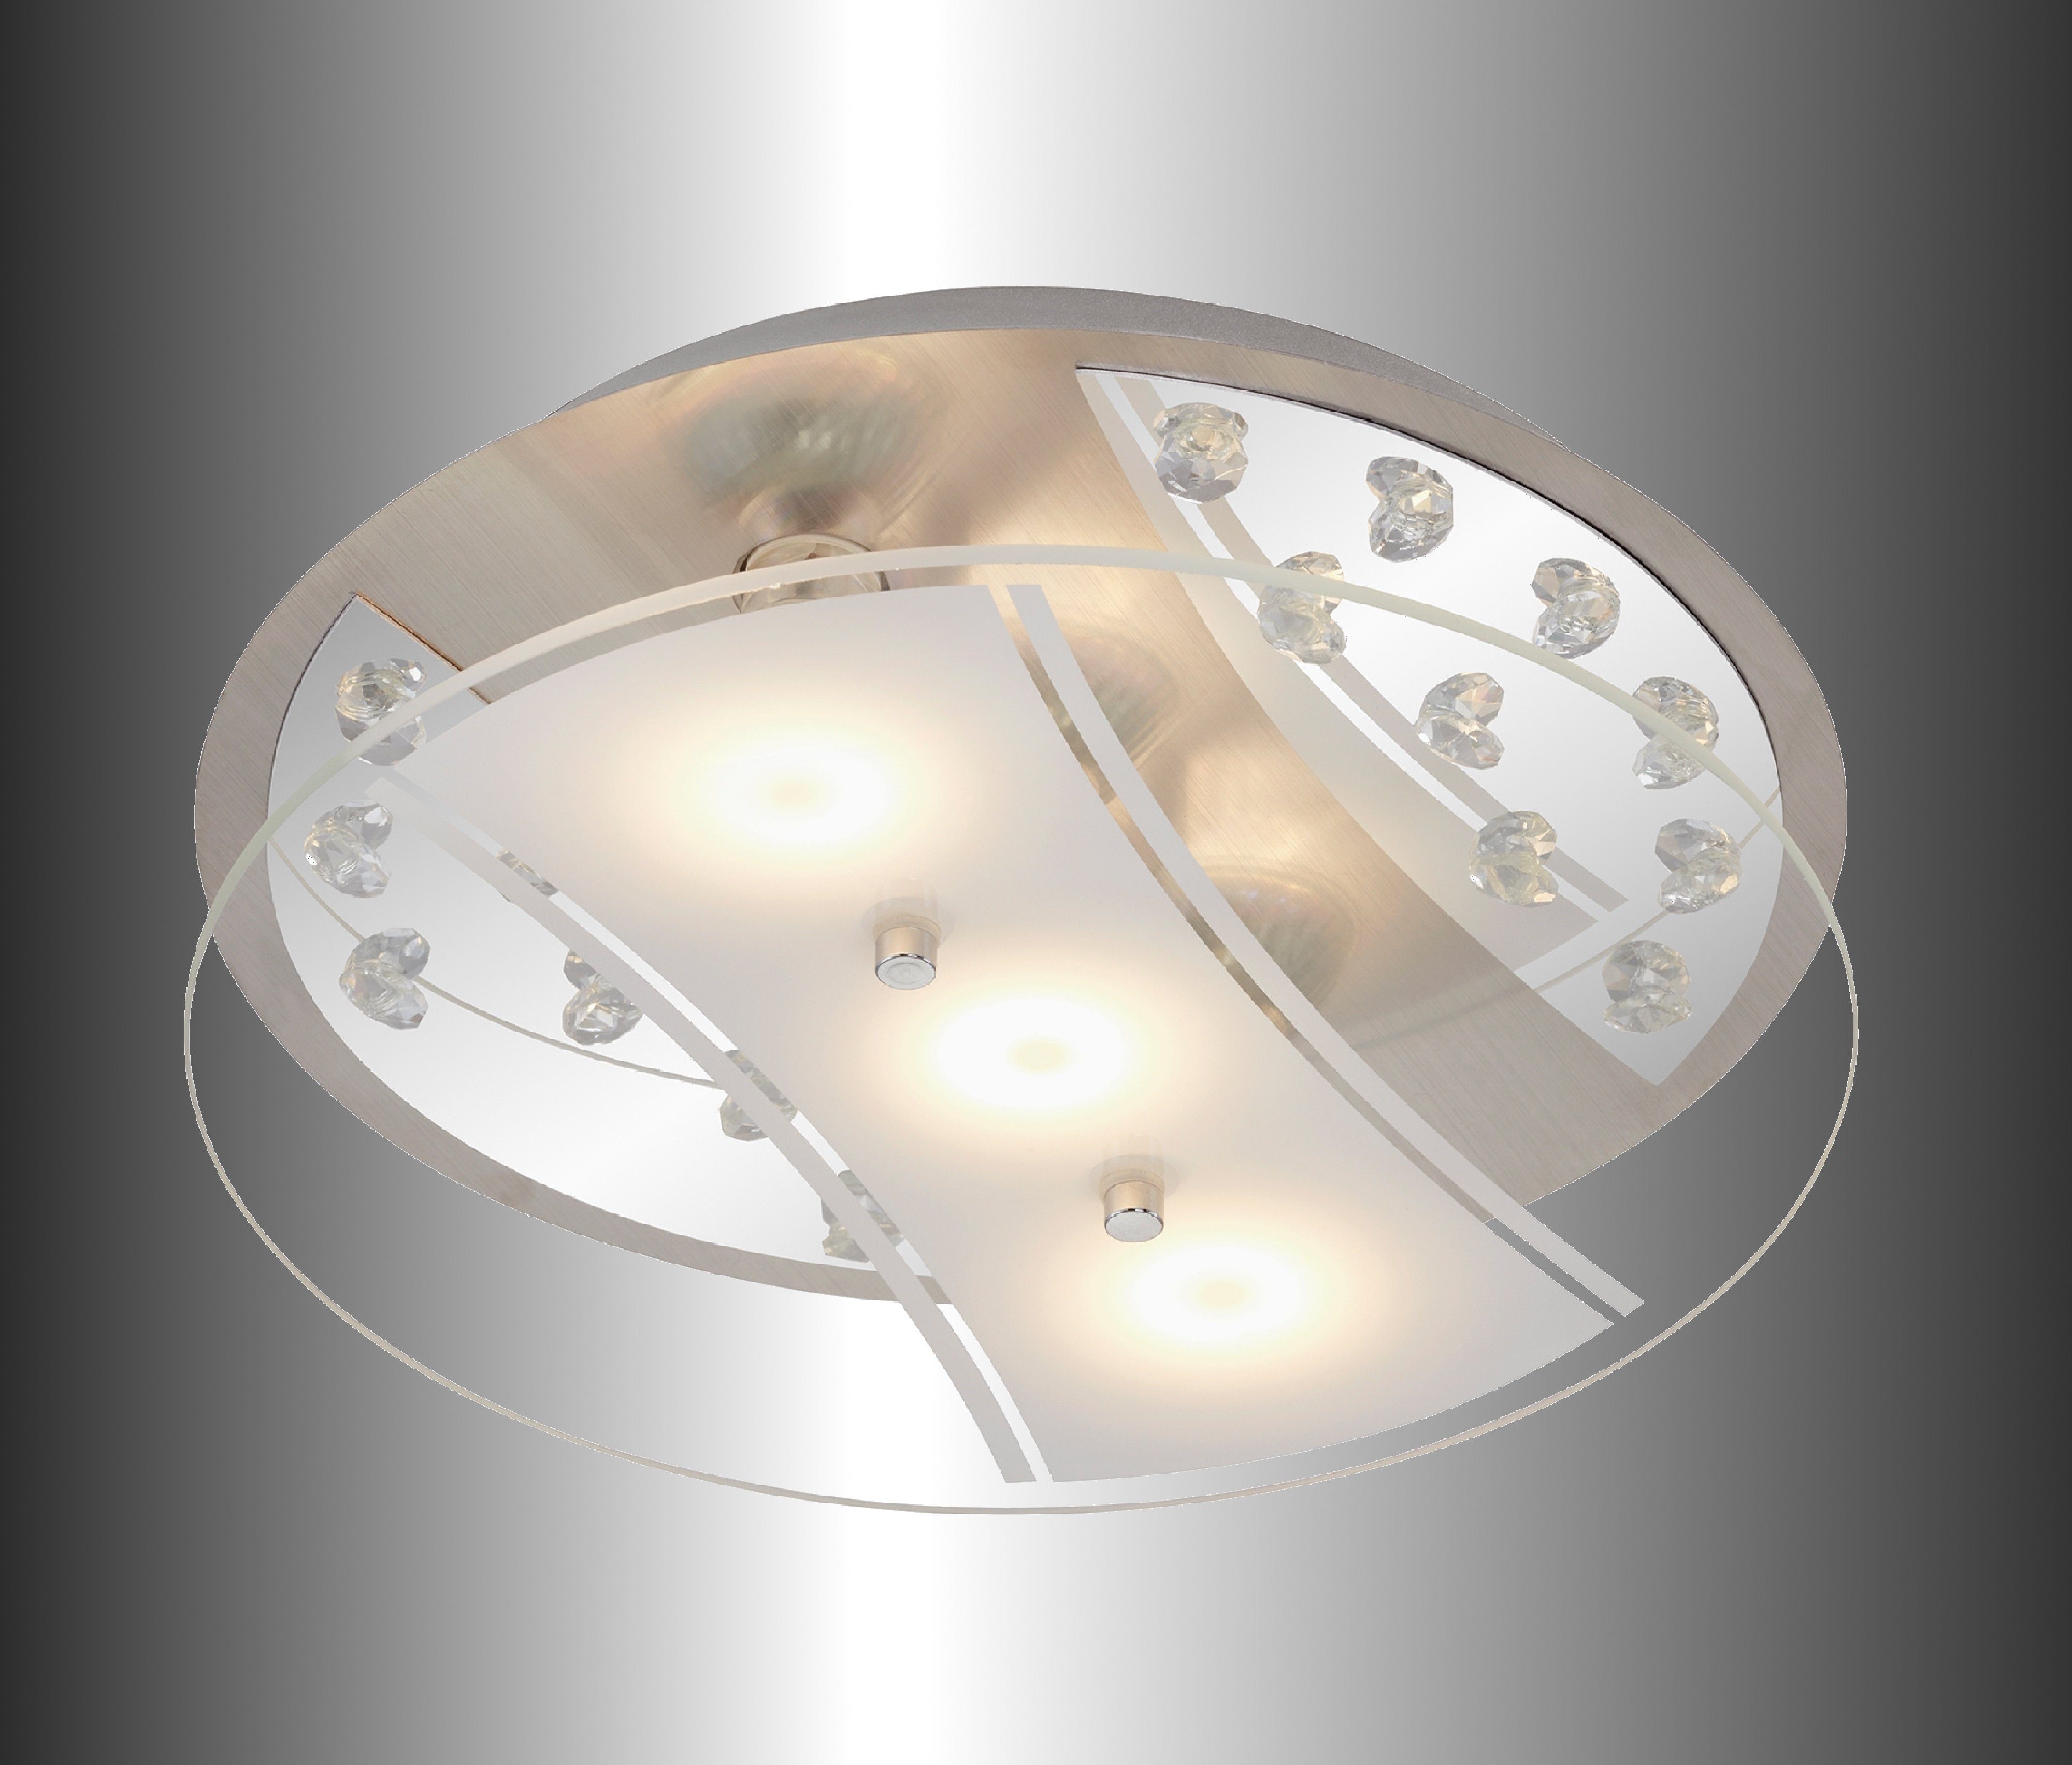 TRANGO LED Badlampe warmweiß 3x Metall 3000K 3489 Leuchtmittel LED 5 Deckenleuchte bedrucktem Watt, Deckenstrahler mit Design GU10 *EDI* Wandleuchte, Glas-Lampenschirm, Deckenleuchte, in Motiv Deckenlampe, Rund aus inkl